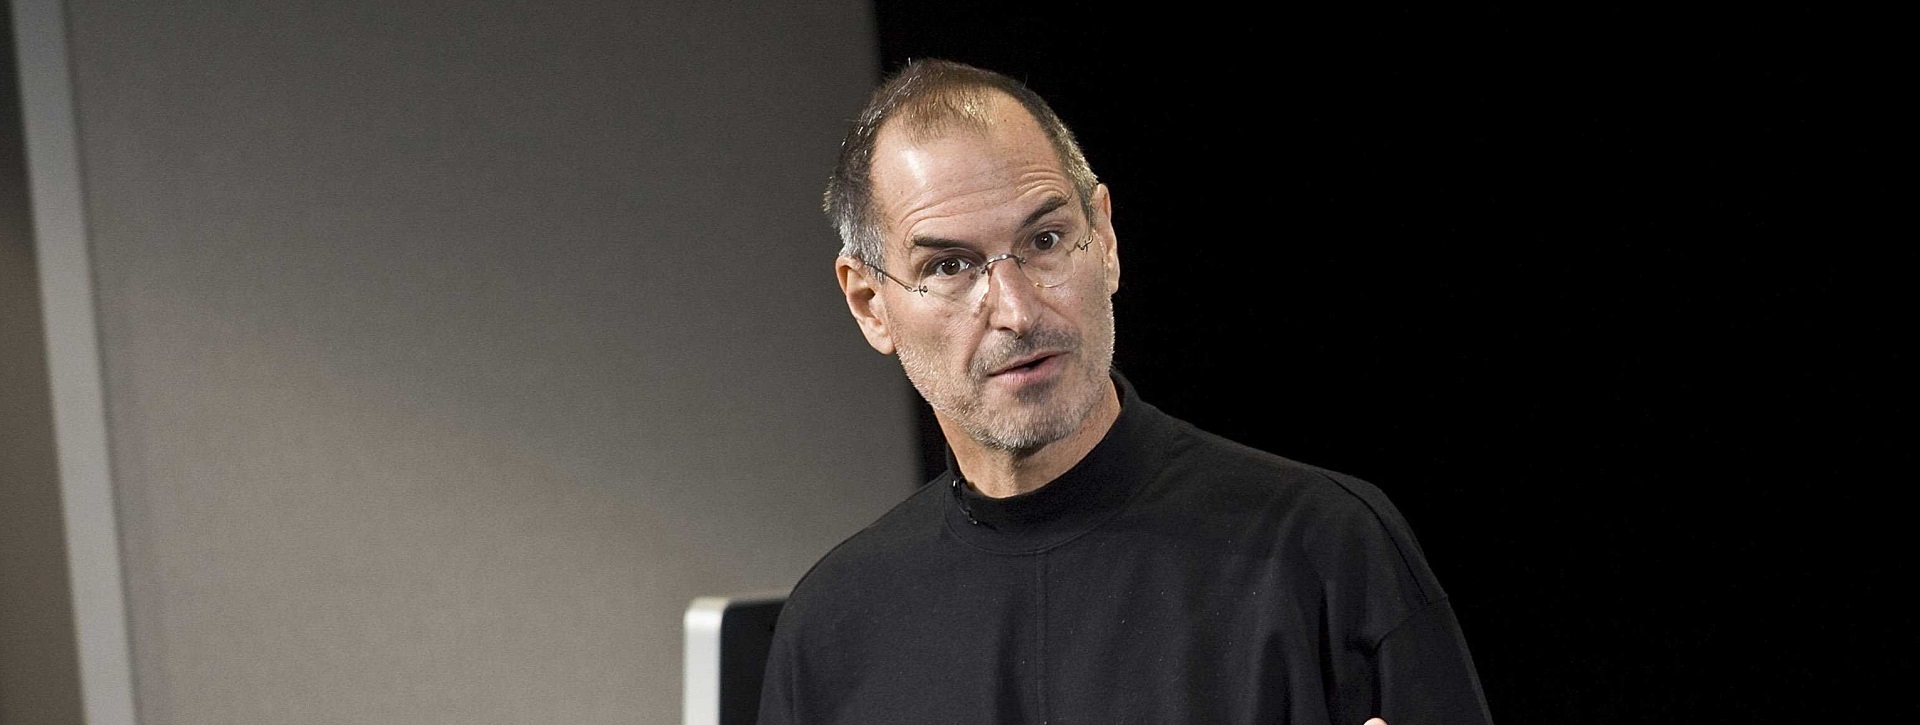 7 câu nói kinh điển của Steve Jobs với người khởi nghiệp kinh doanh (P2)